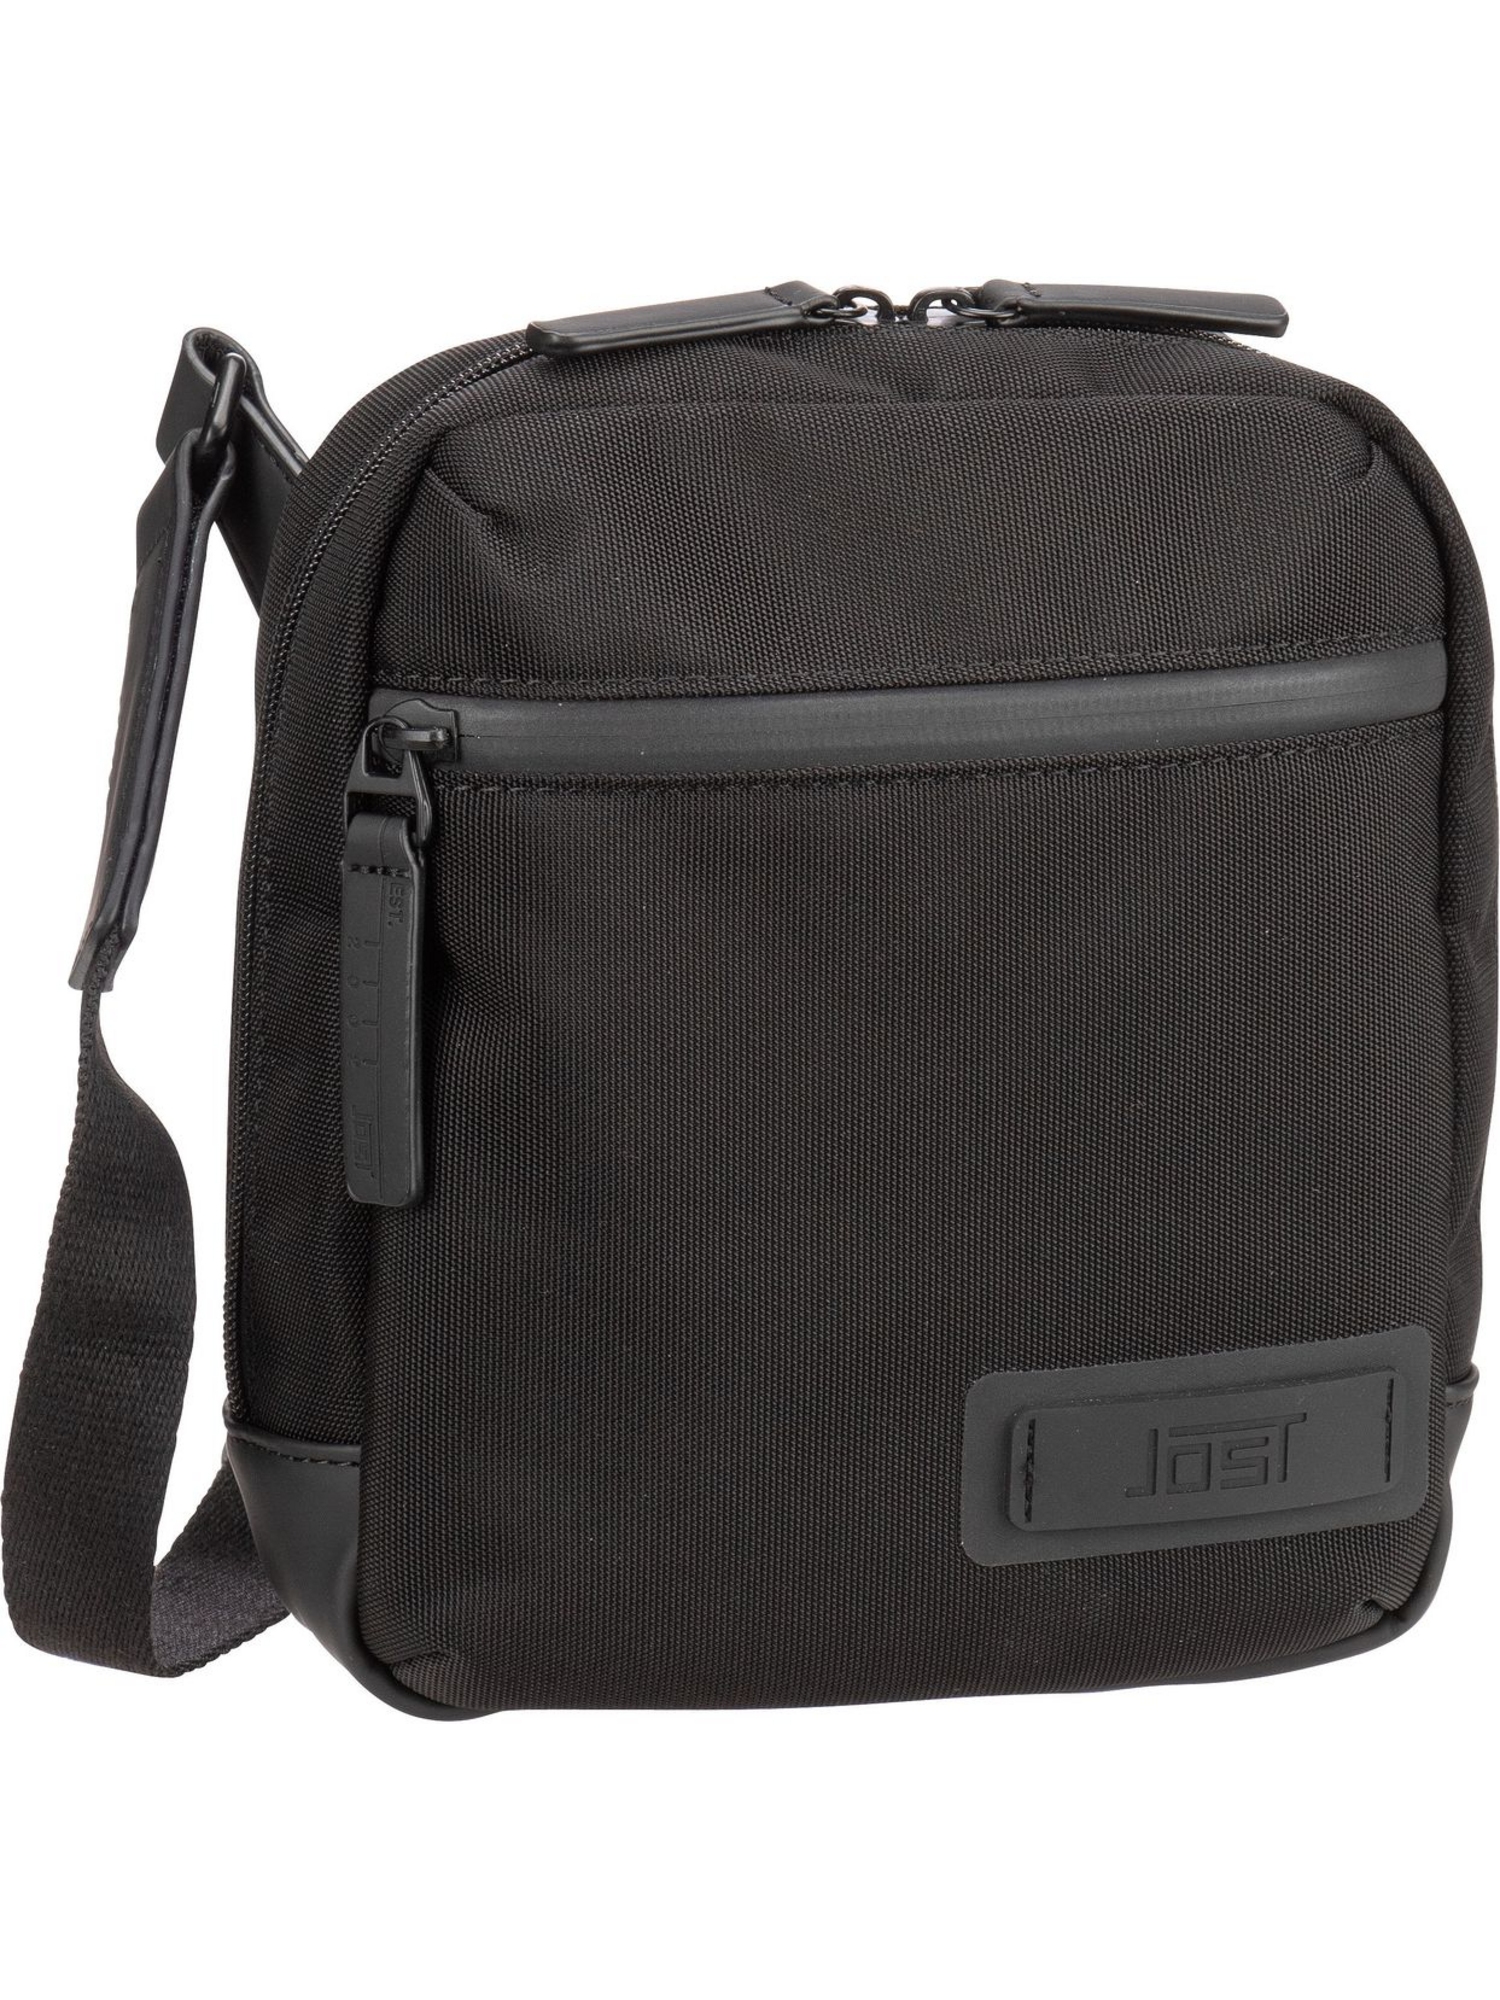 Сумка через плечо Jost Tallinn Shoulder Bag Zip XS, черный